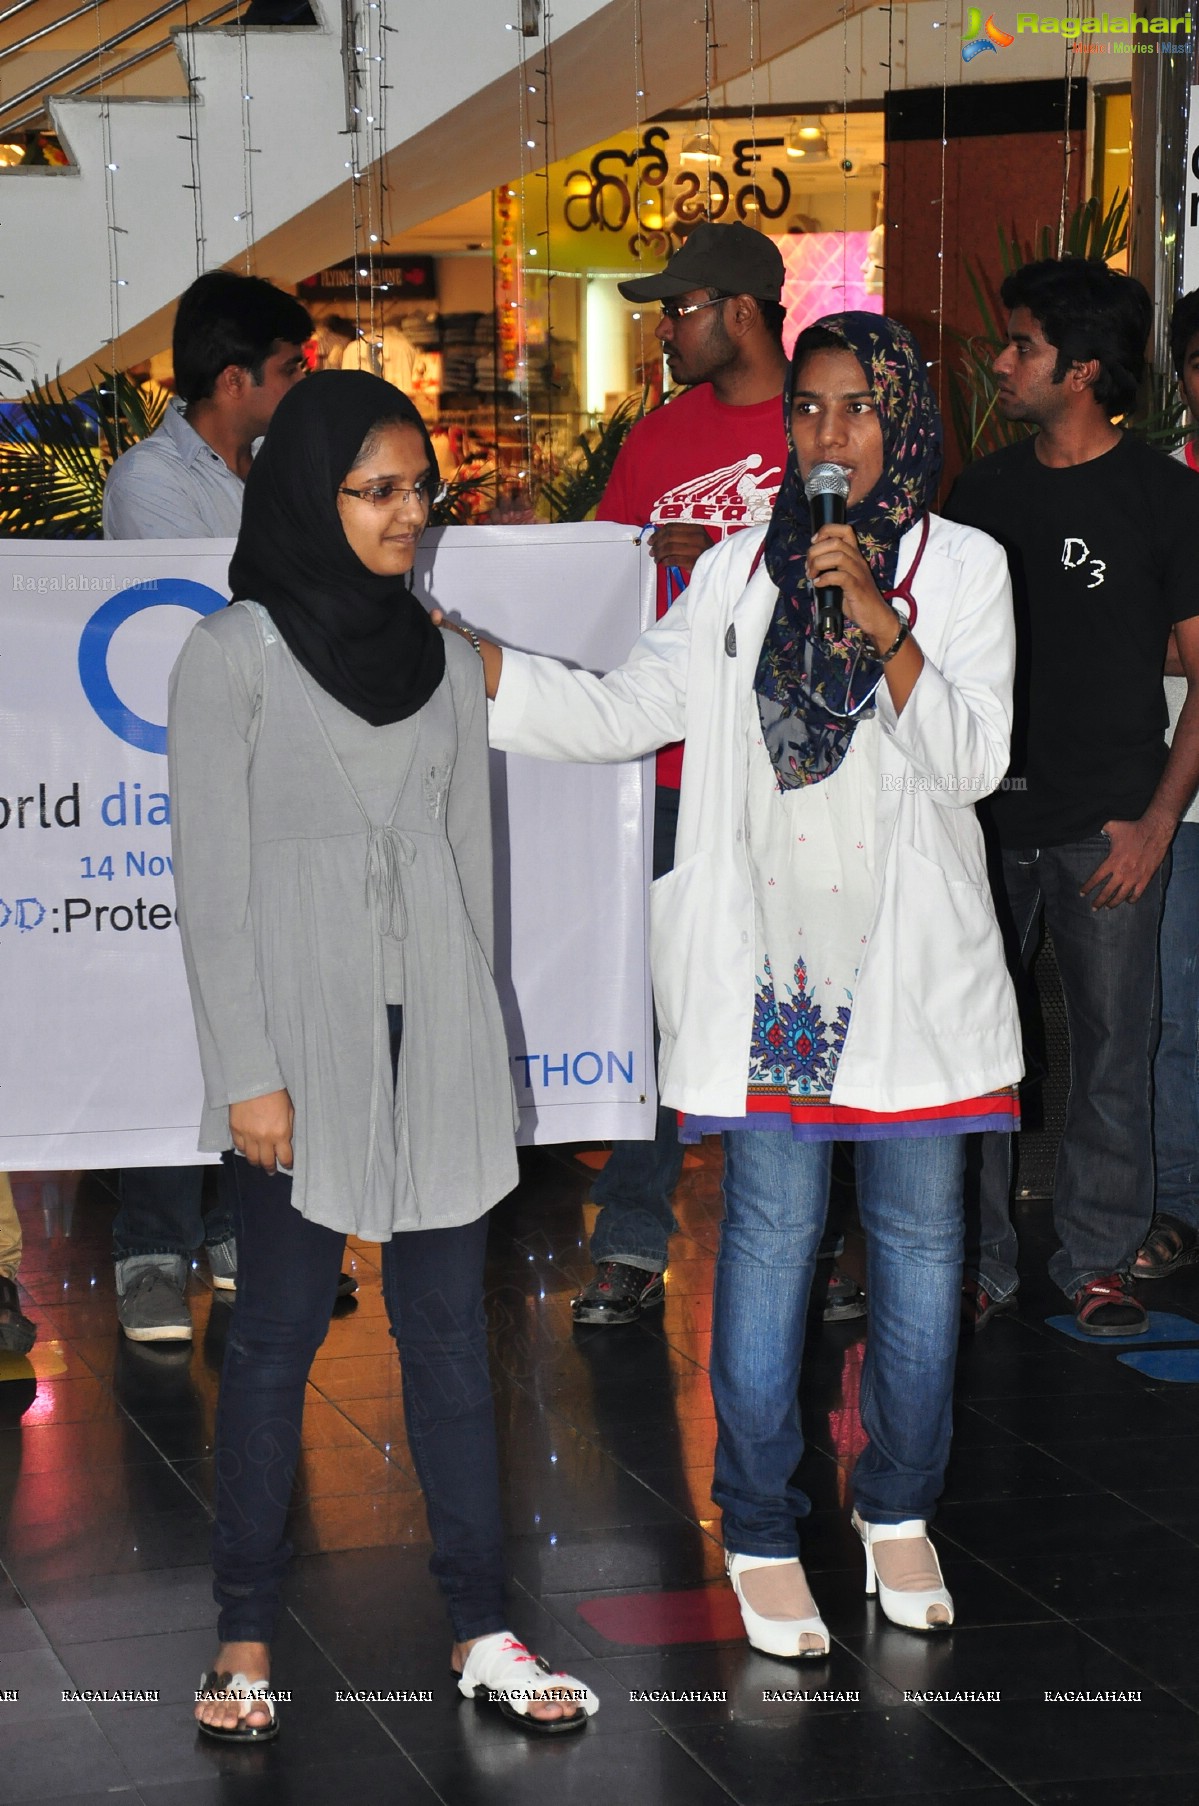 Diabetes Awareness Skit at City Center, Hyderabad